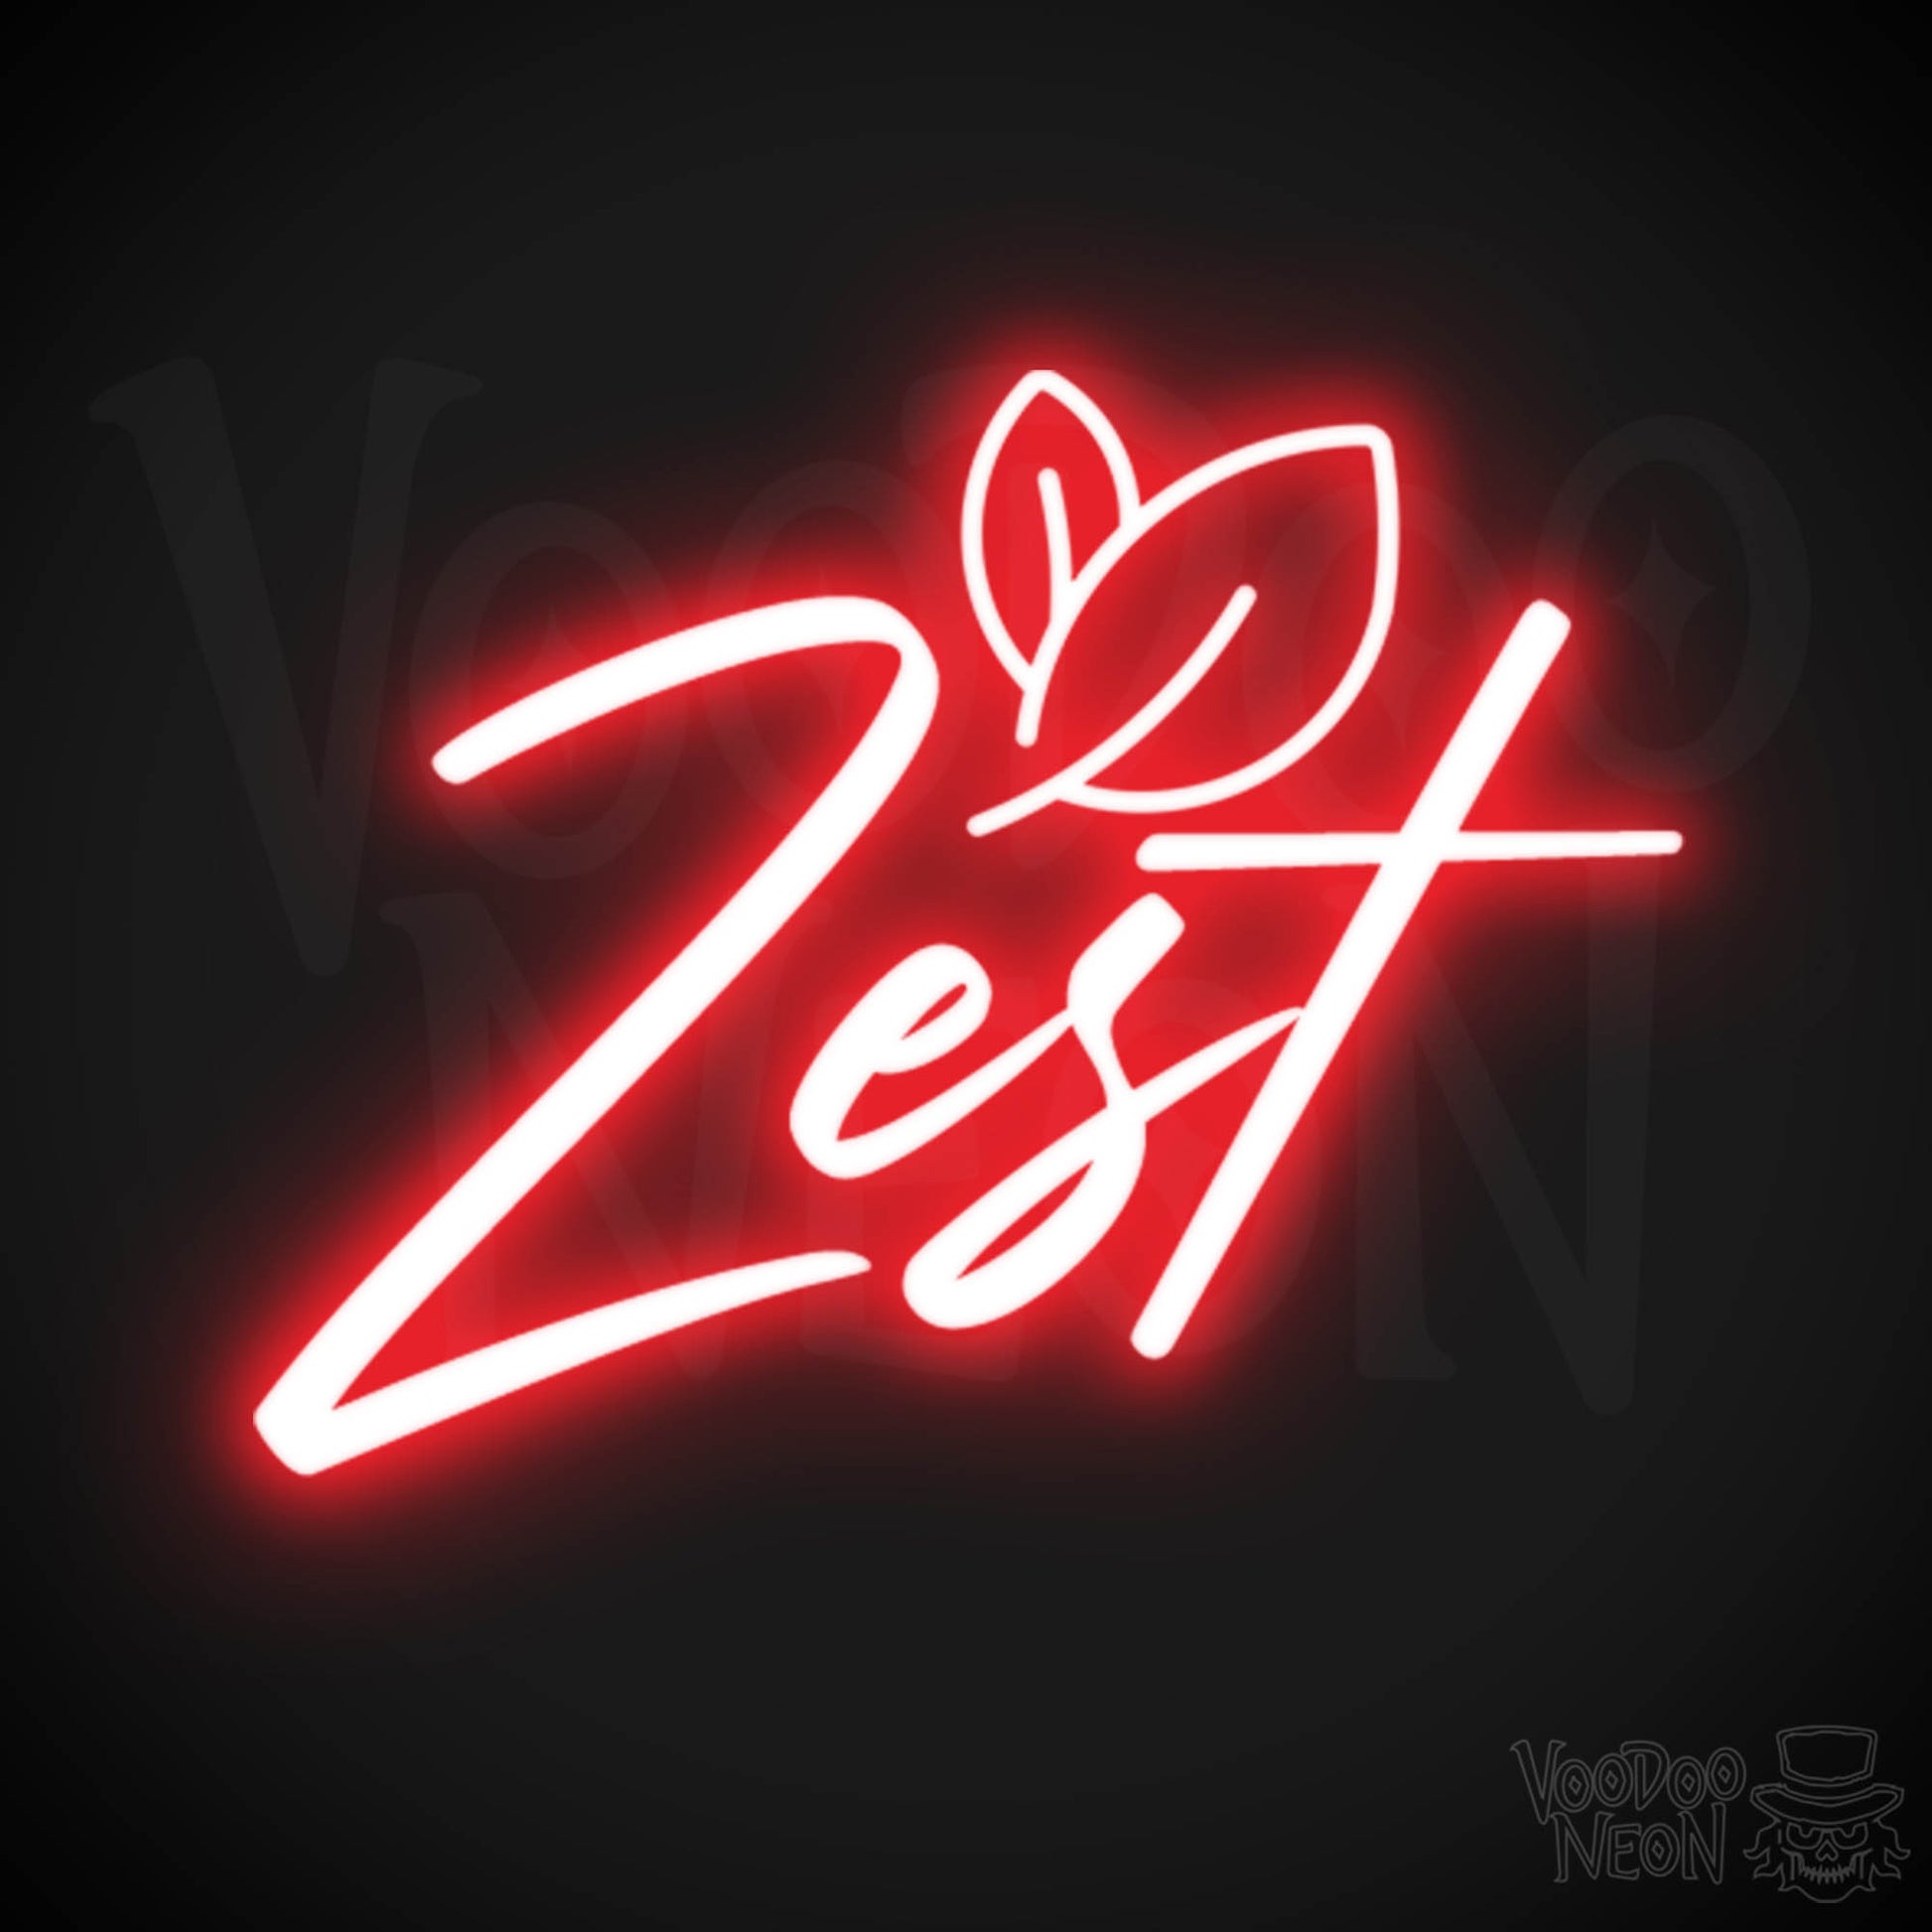 Zest Neon Sign - Neon Zest Sign - Color Red